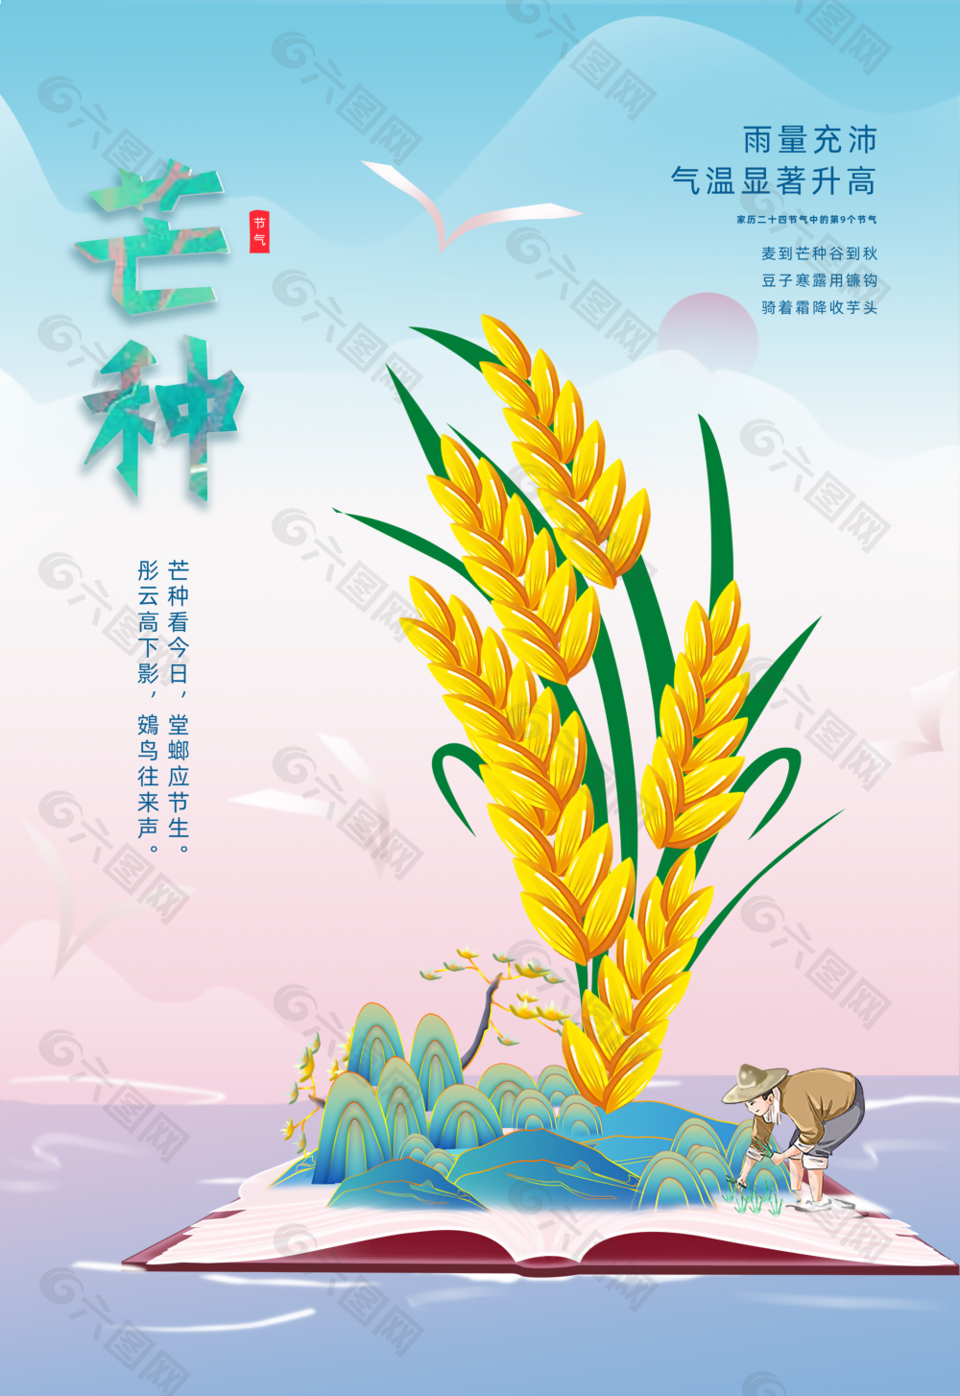 古典传统二十四节气之芒种农民插秧海报